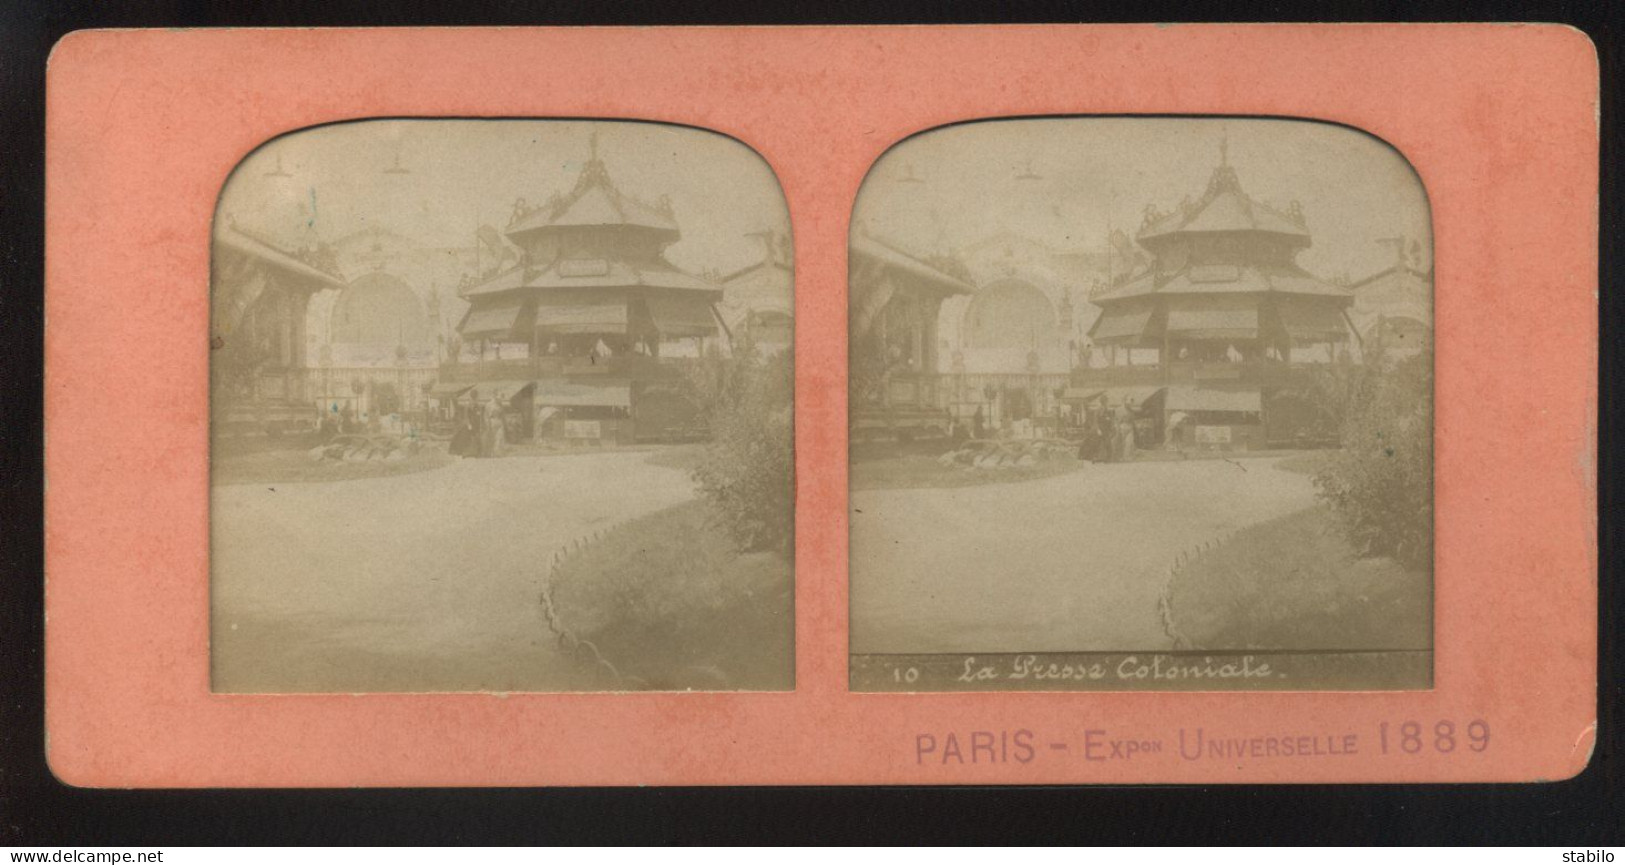 PHOTO STEREO CONTRE LA LUMIERE - PARIS EXPOSITION UNIVERSELLE 1889 - LA PRESSE COLONIALE - Stereoscopic